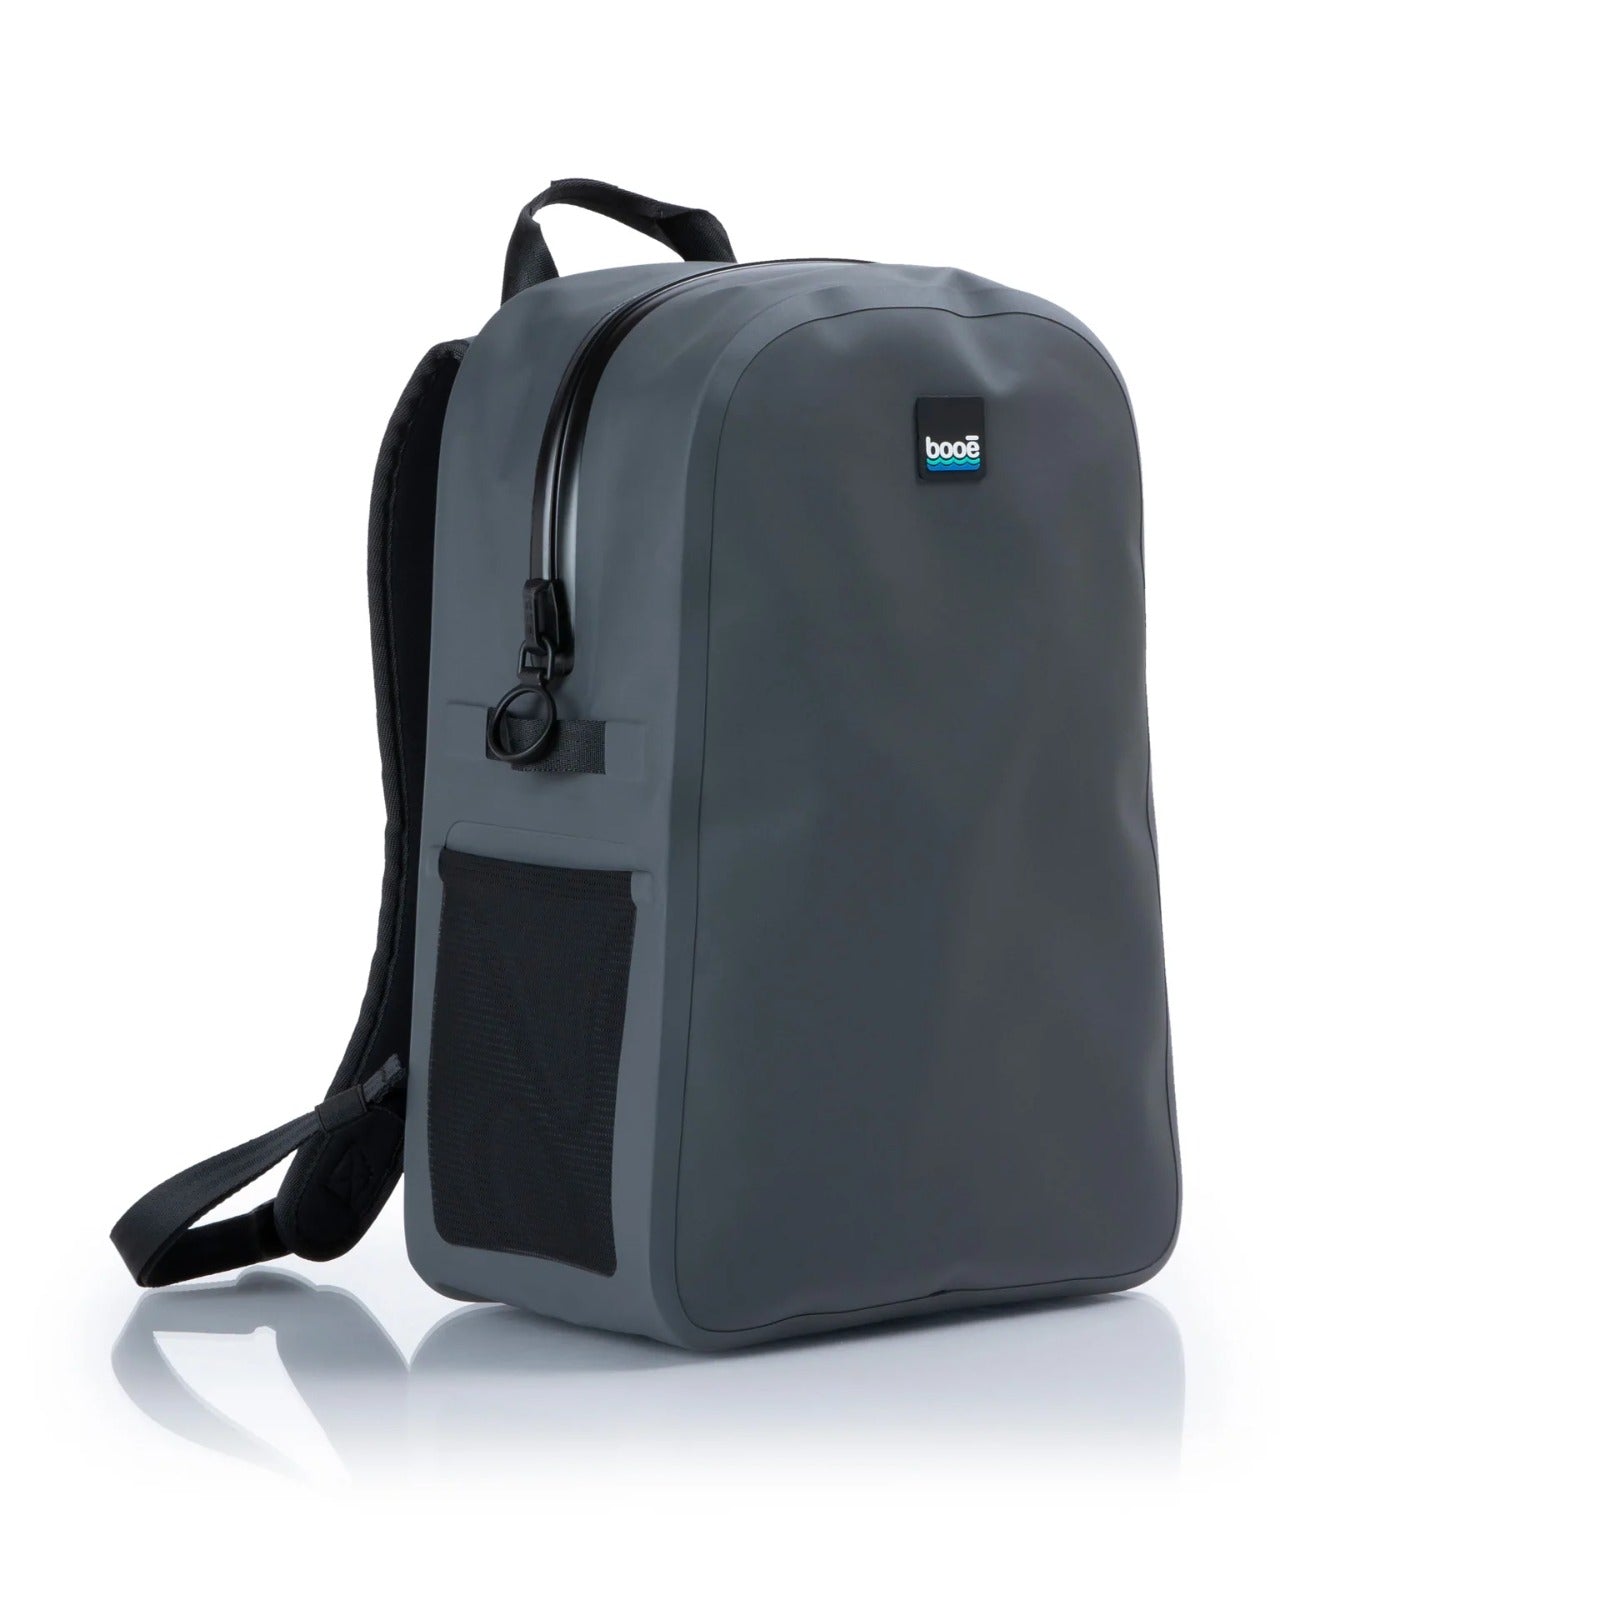 16L Waterproof Backpack